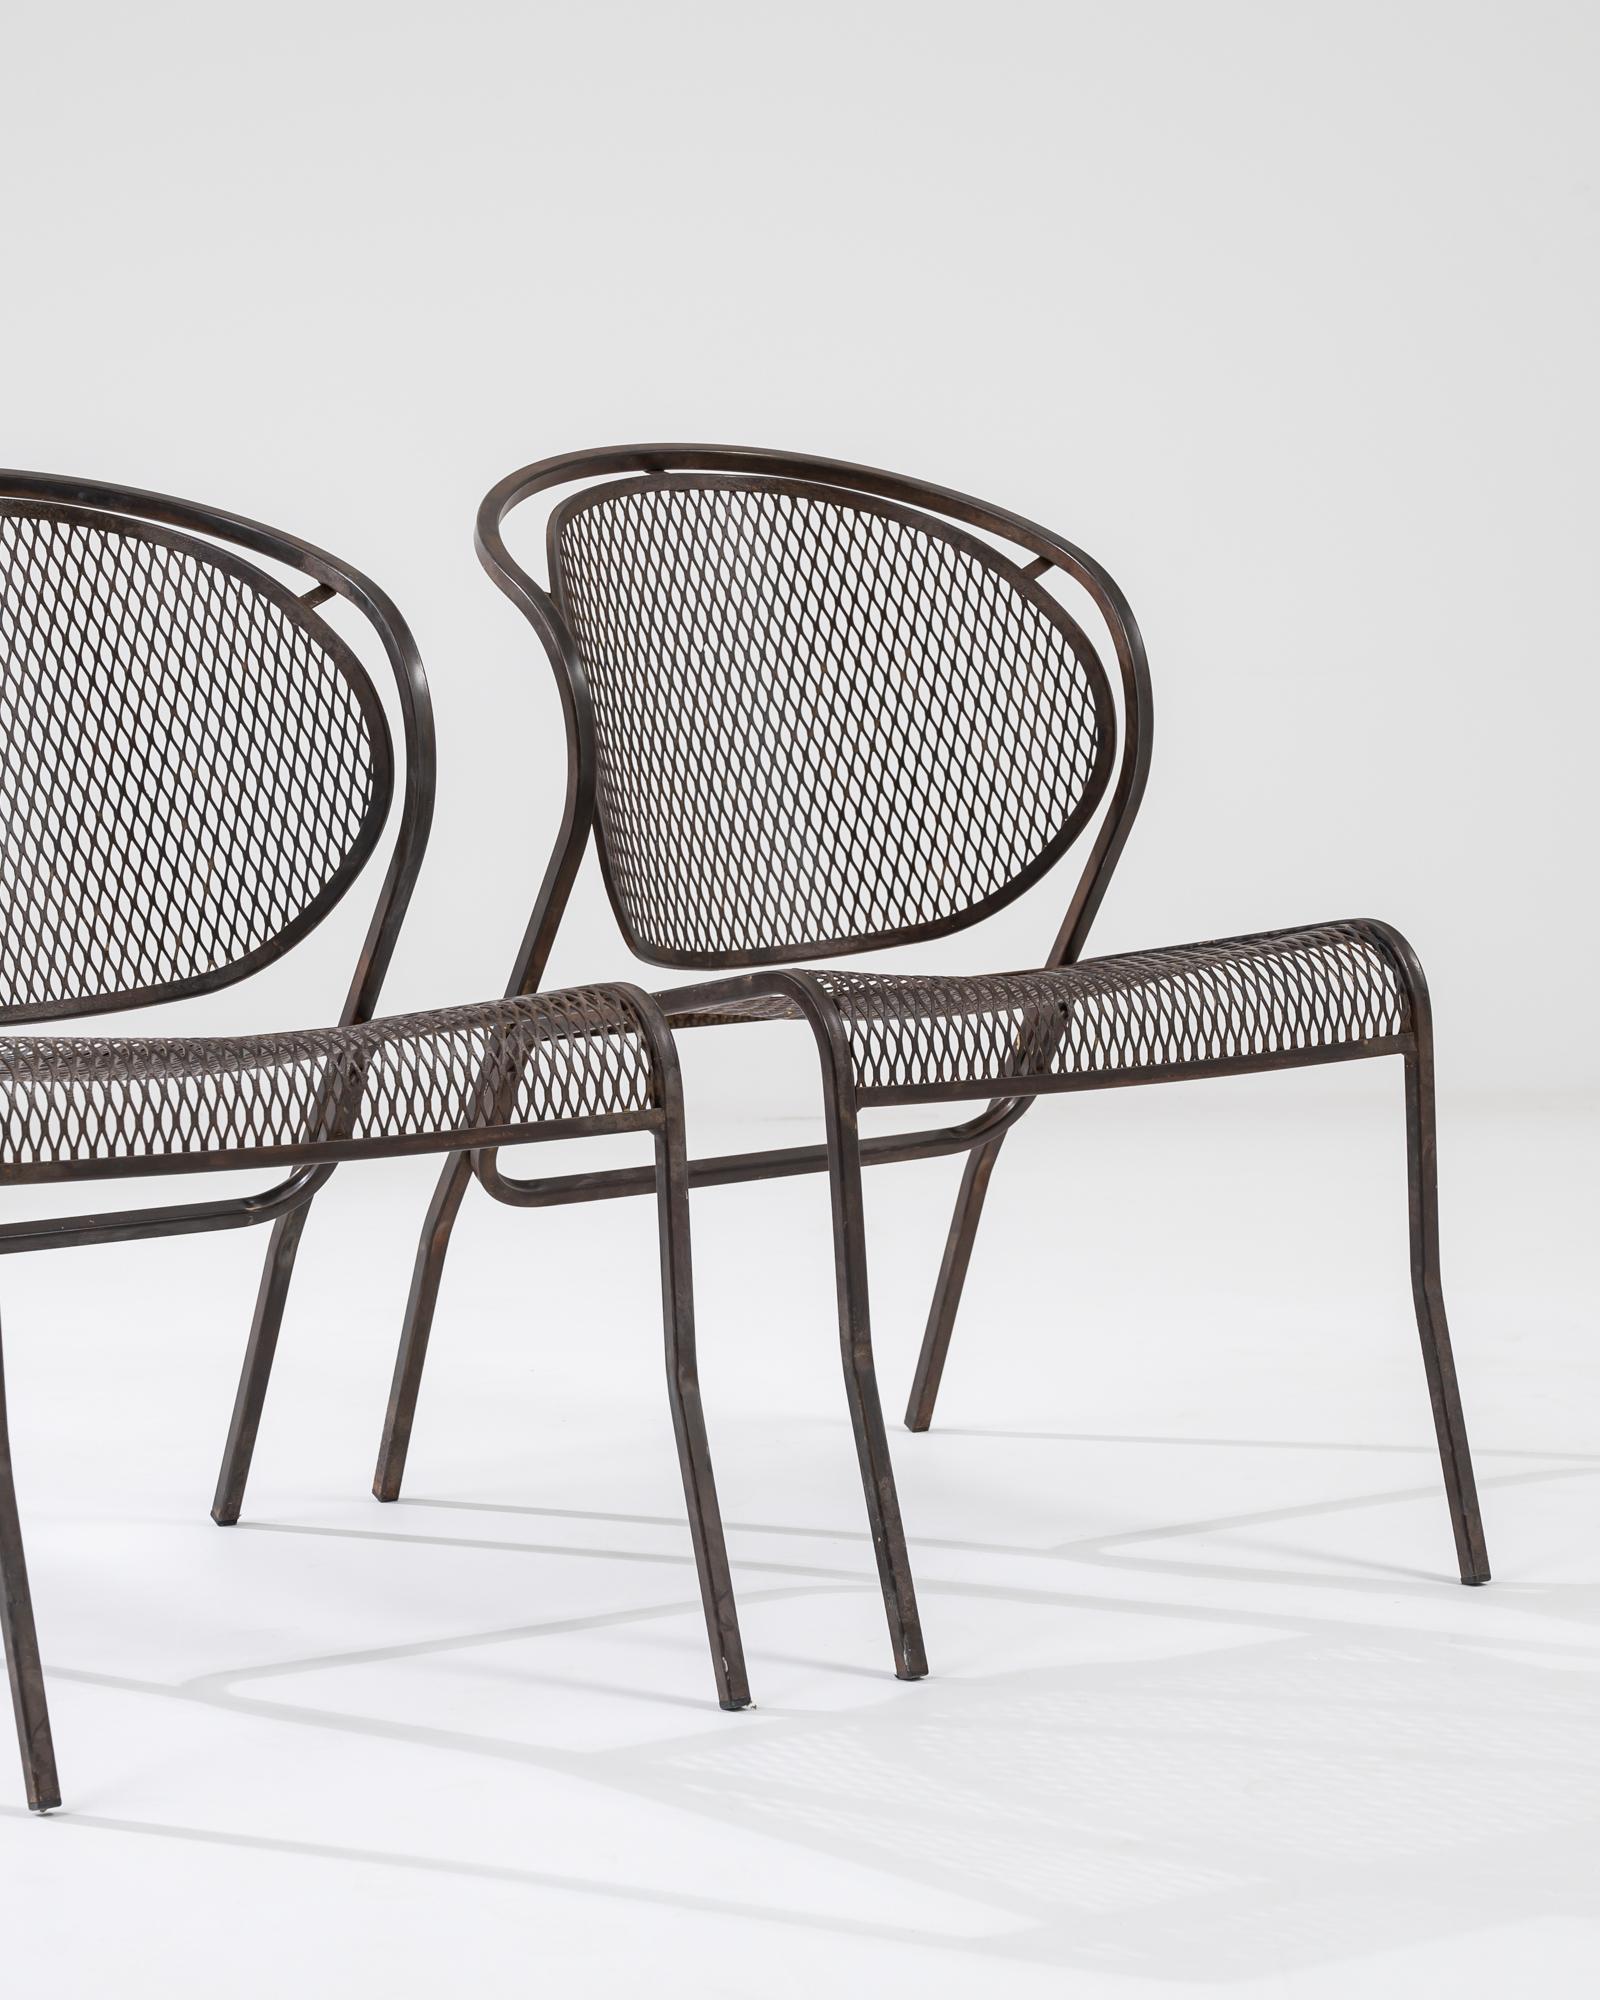 20th Century European Garden Chairs, a Pair 4